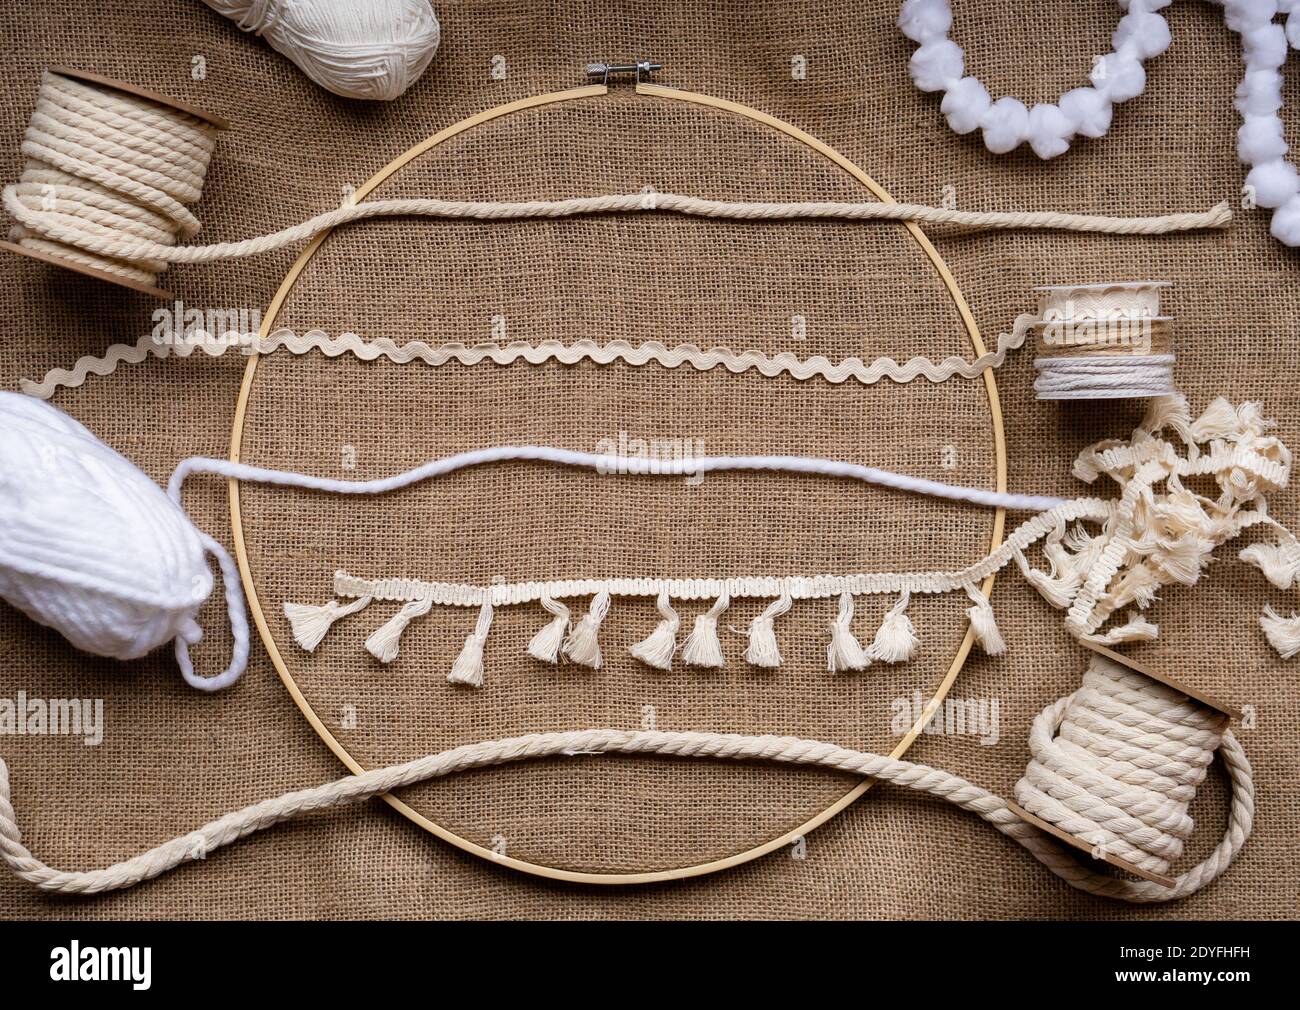 Plusieurs types différents de rubans, de garnitures et de cordes dans des tons naturels sur un tissu de toile dans un cerceau de broderie de bambous Banque D'Images